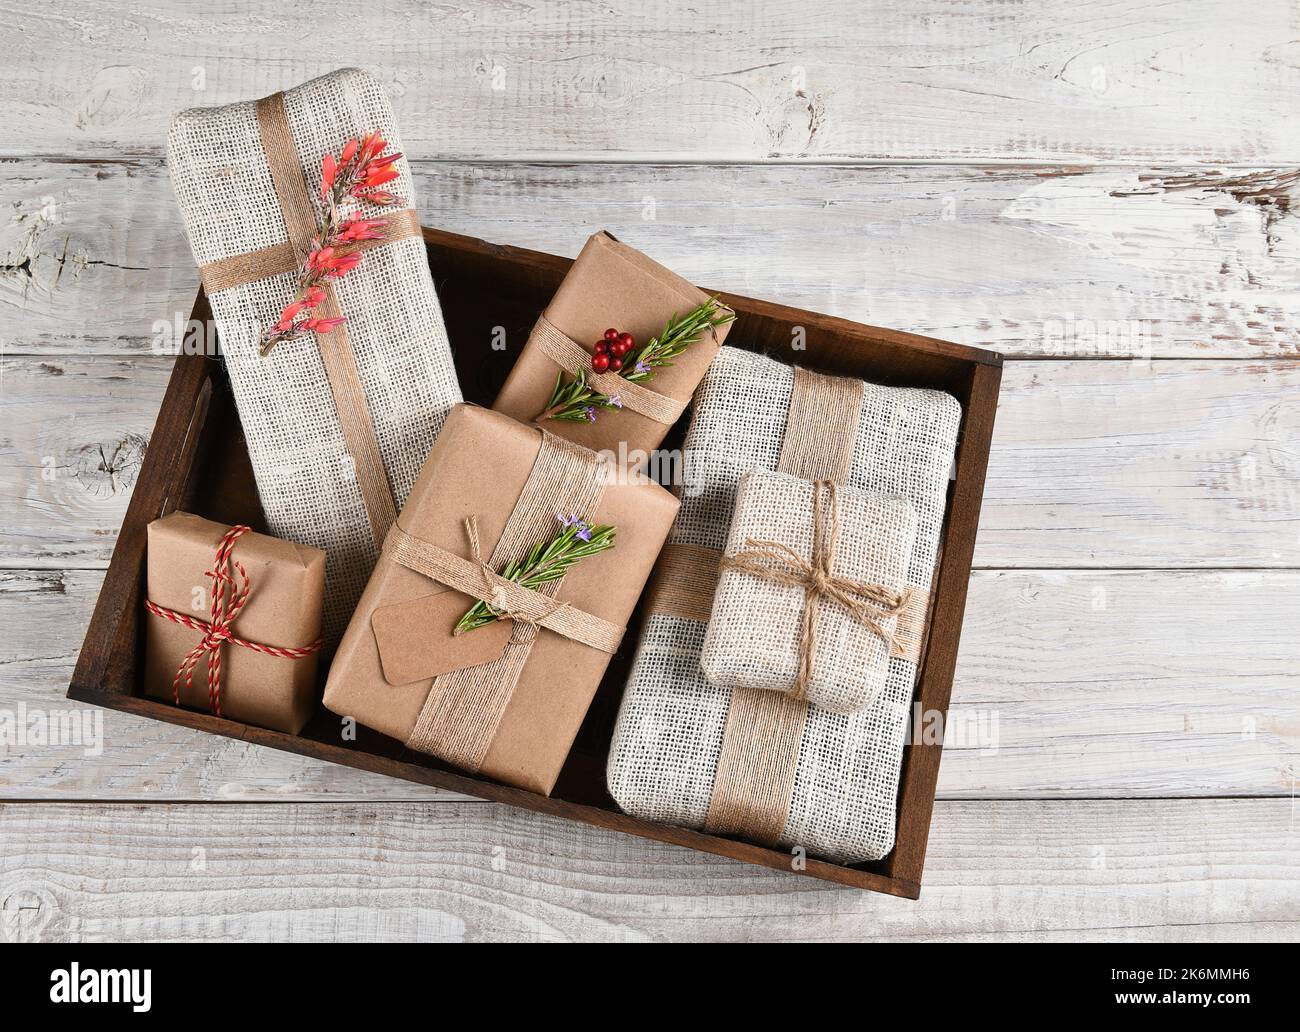 Cadeaux de Noël. Cadeaux en toile de jute et papier brun Uni emballés dans une boîte en bois. Banque D'Images